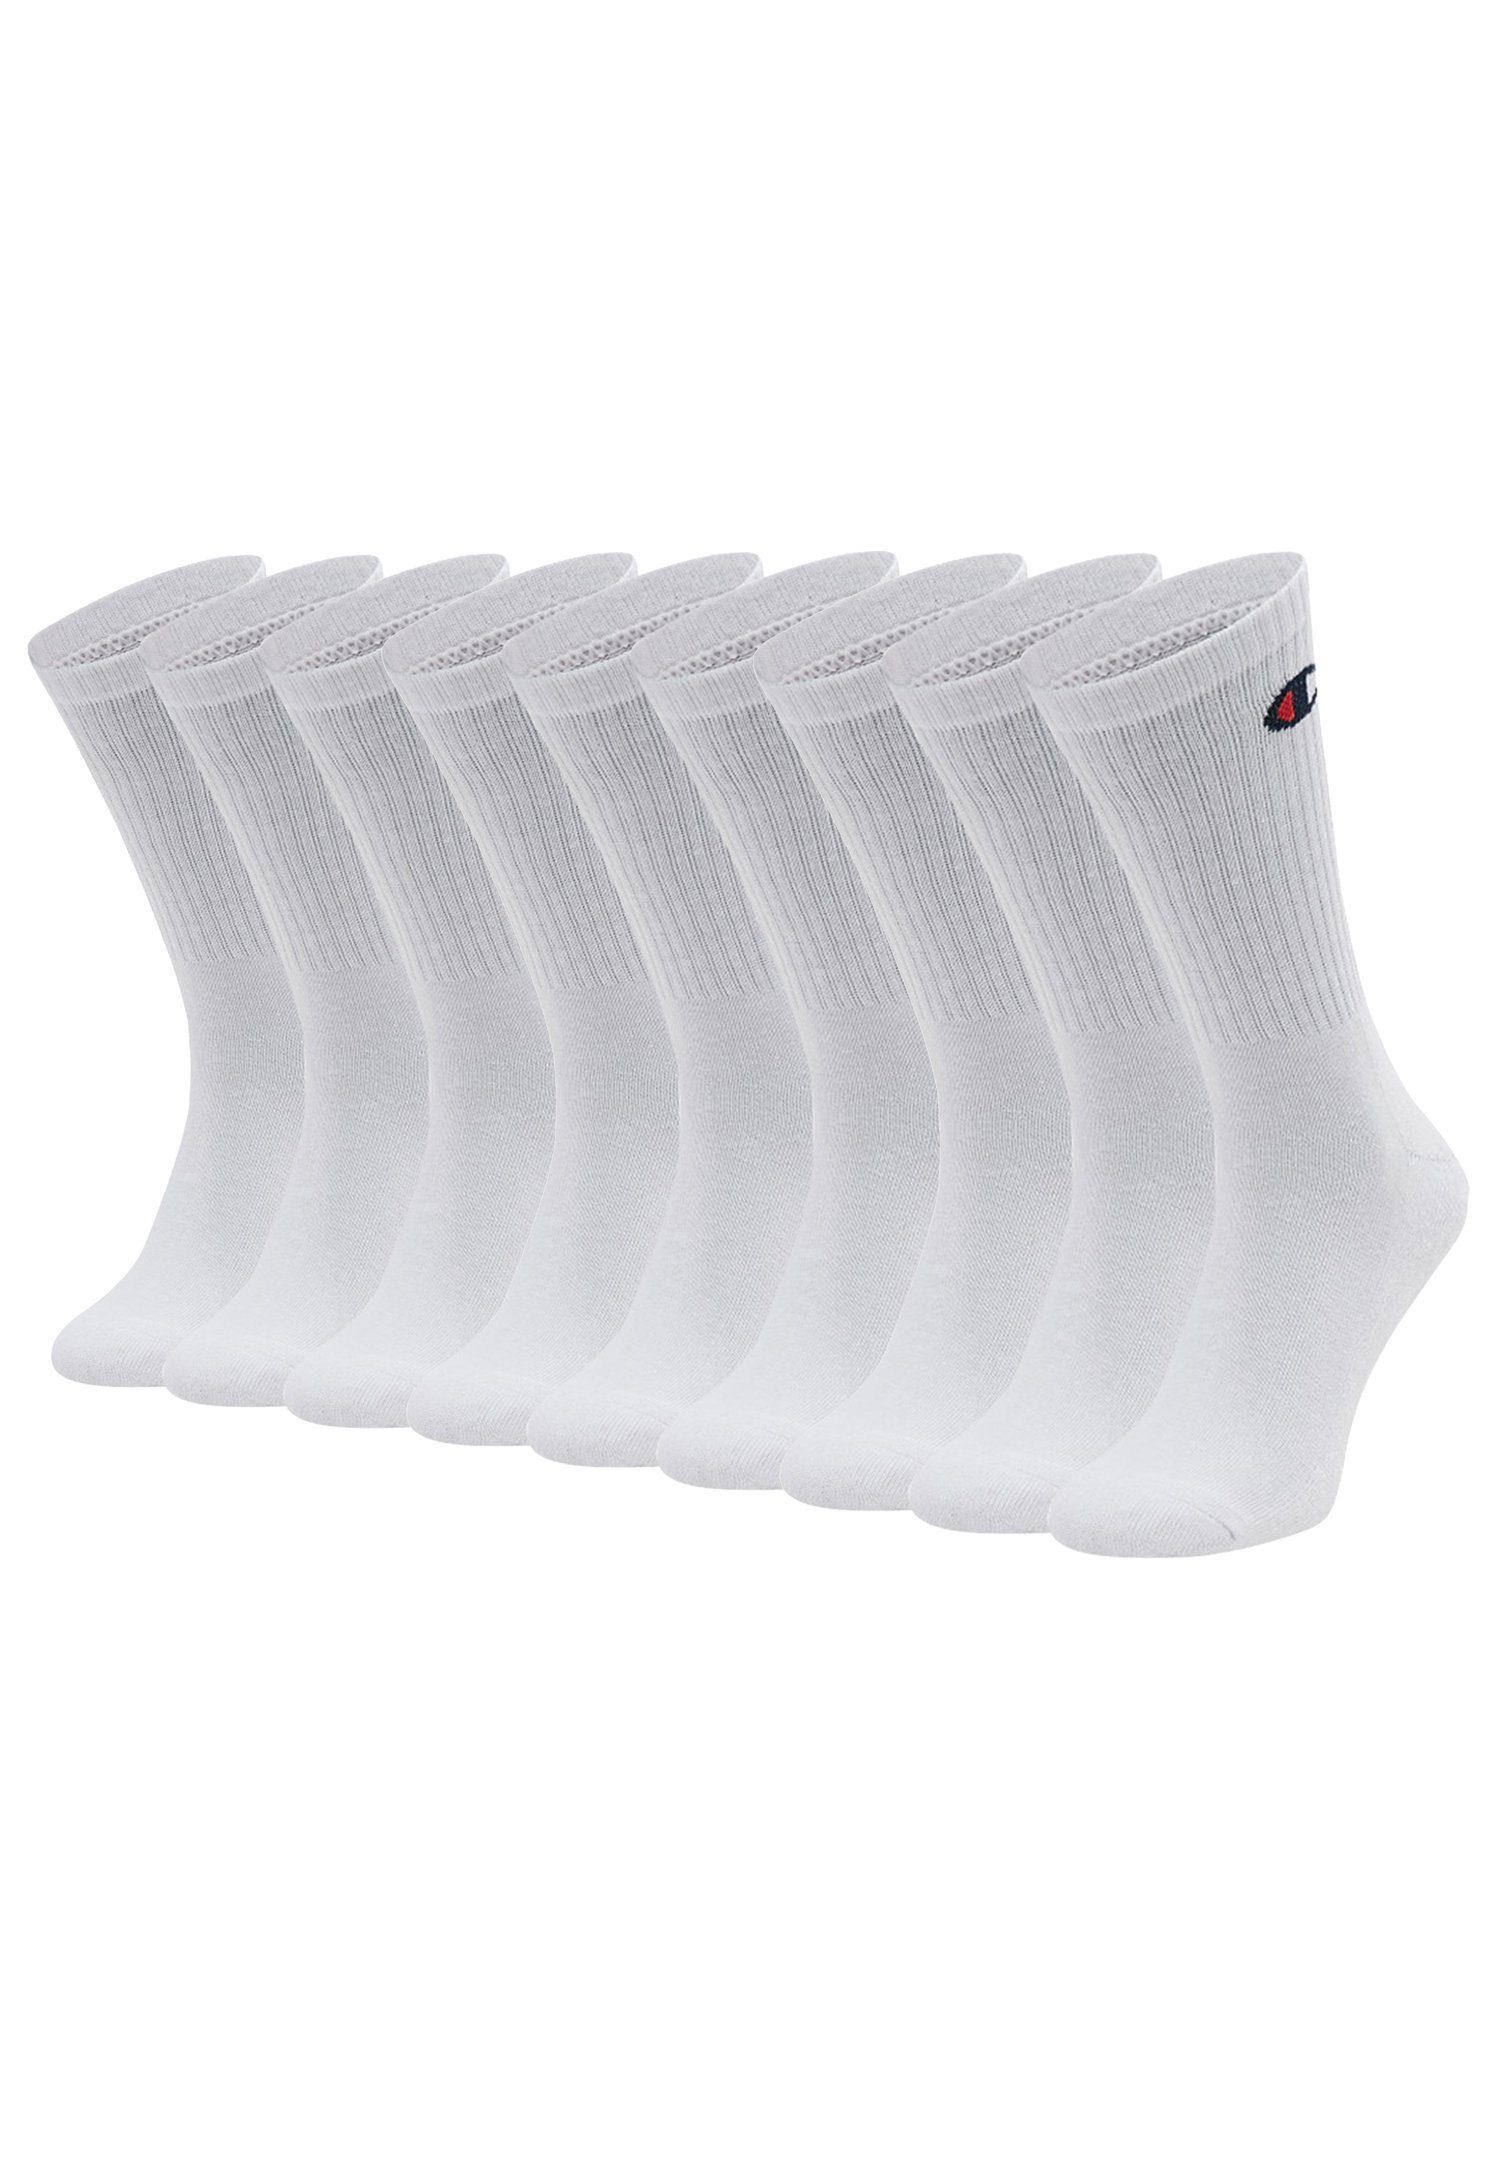 Socks 9pk (9-Paar) Socken Champion White Crew